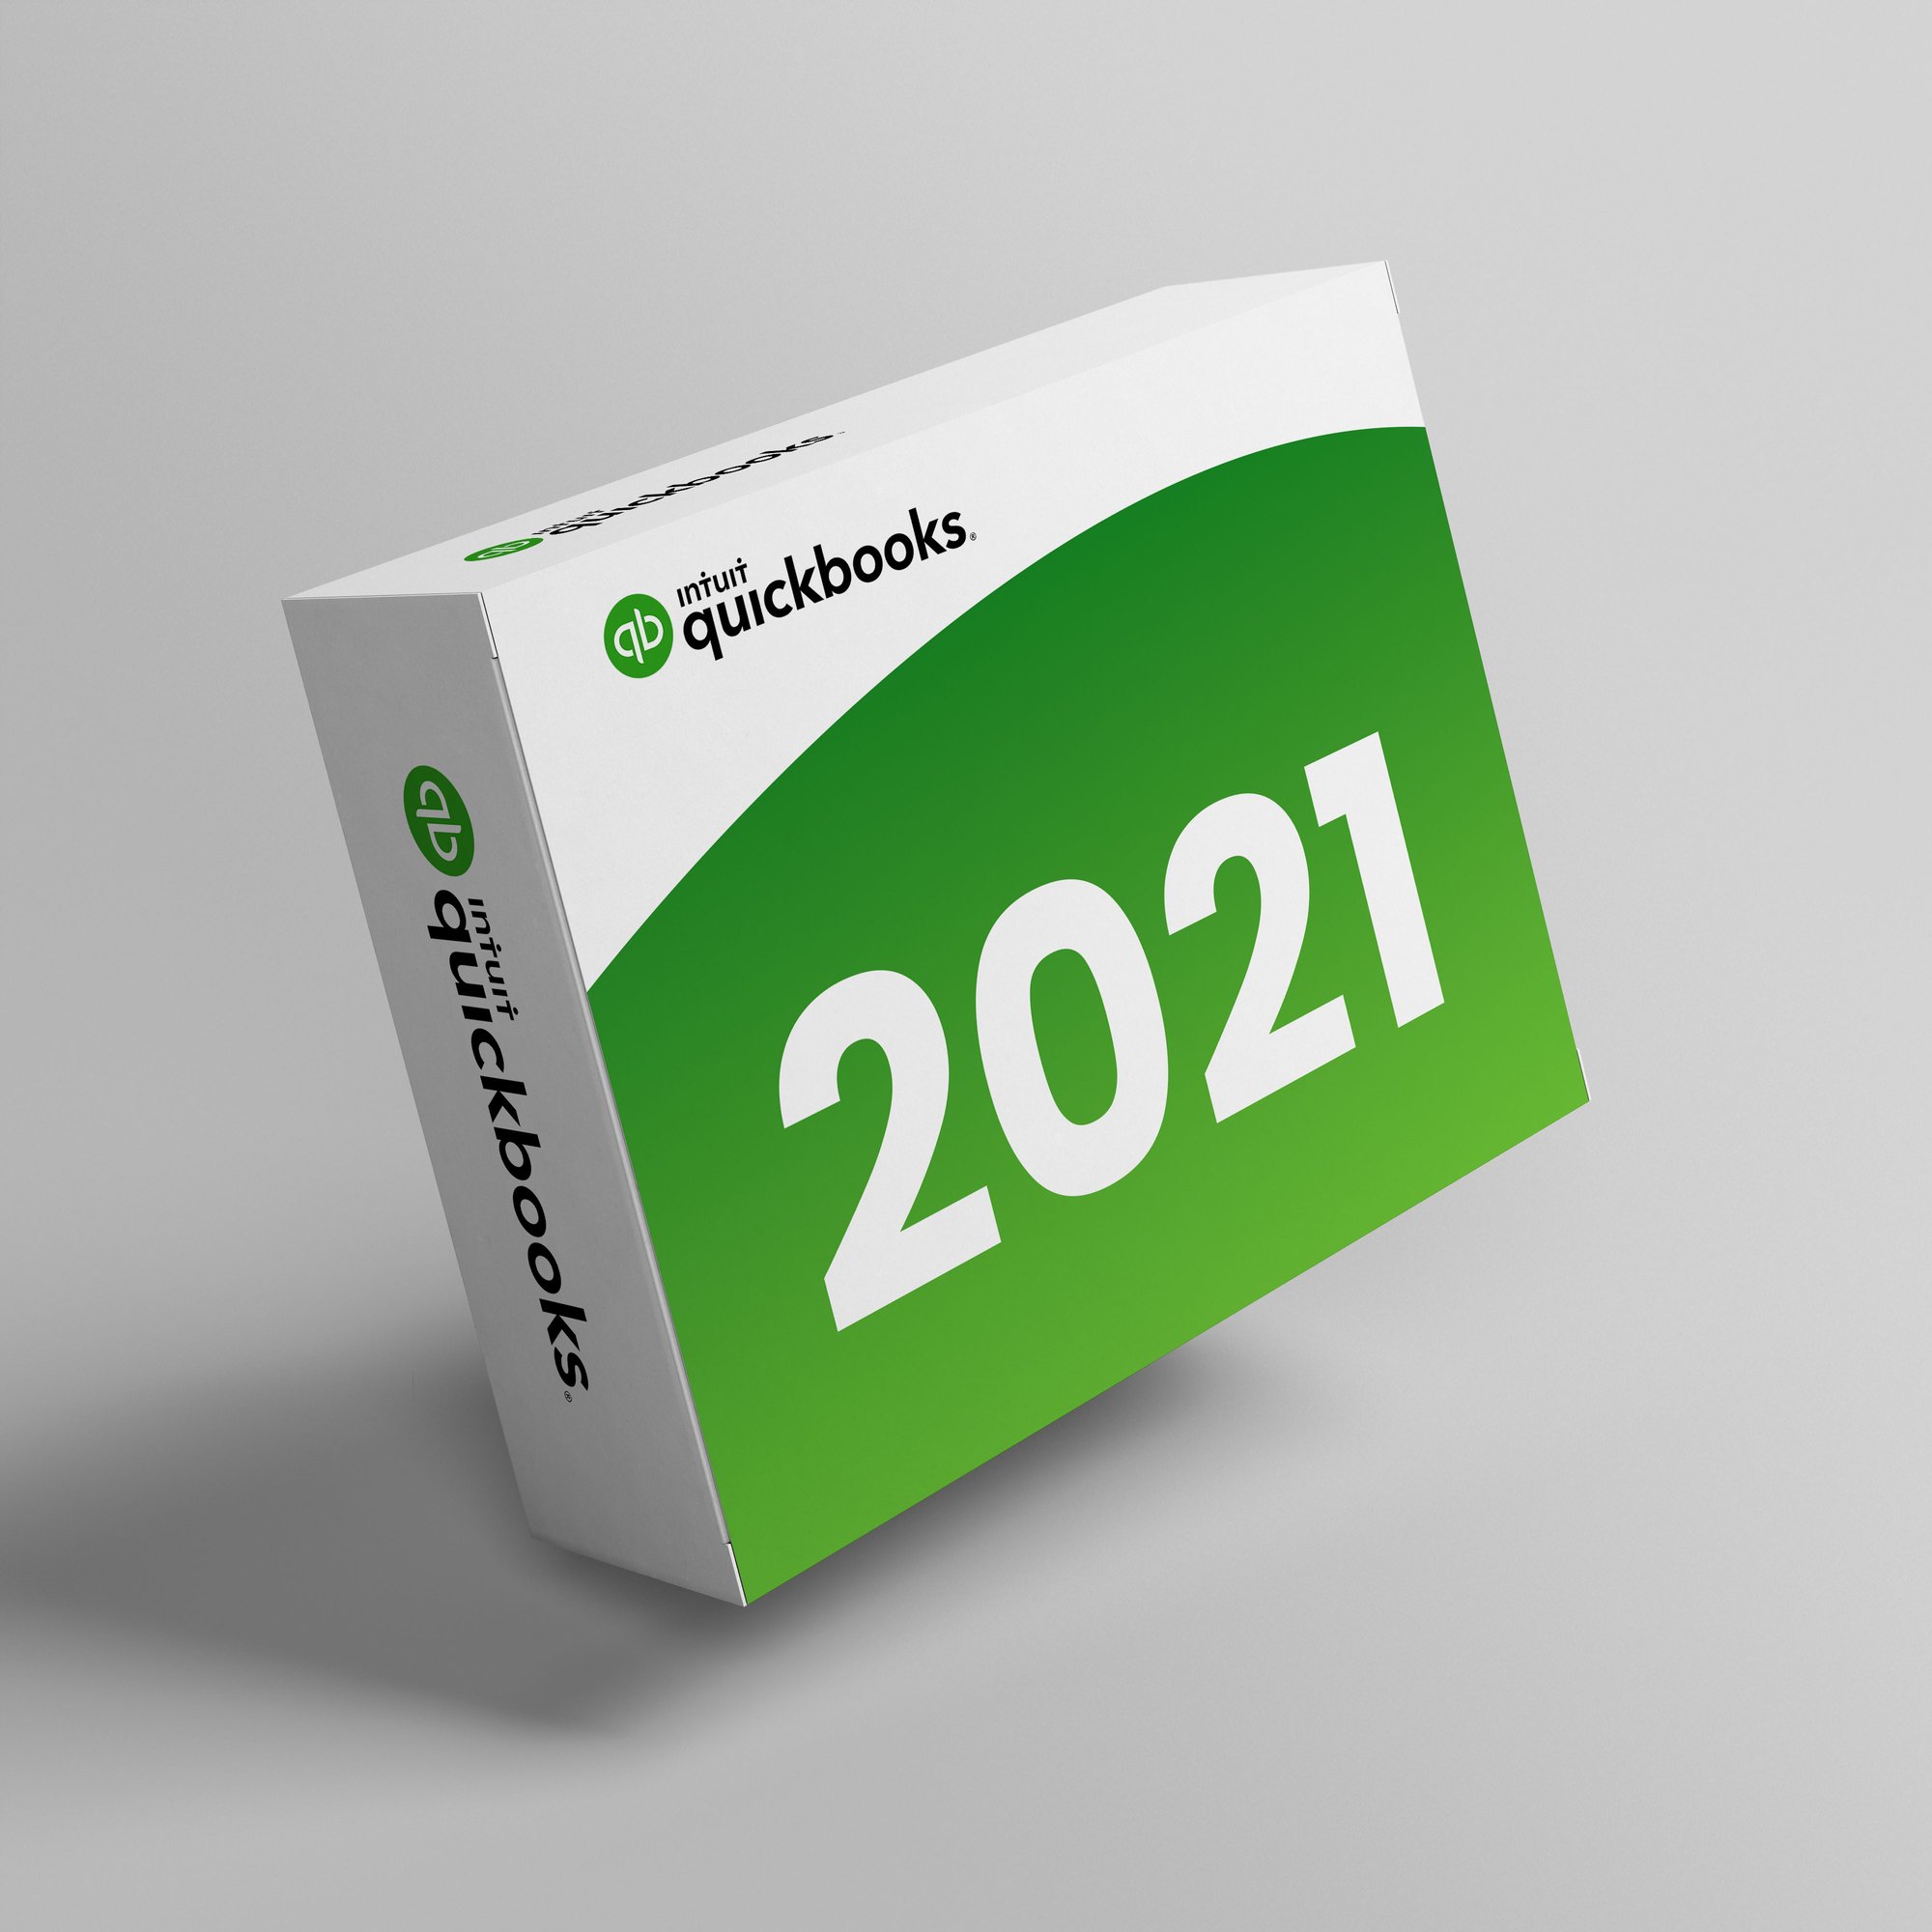 Quickbooks-2021